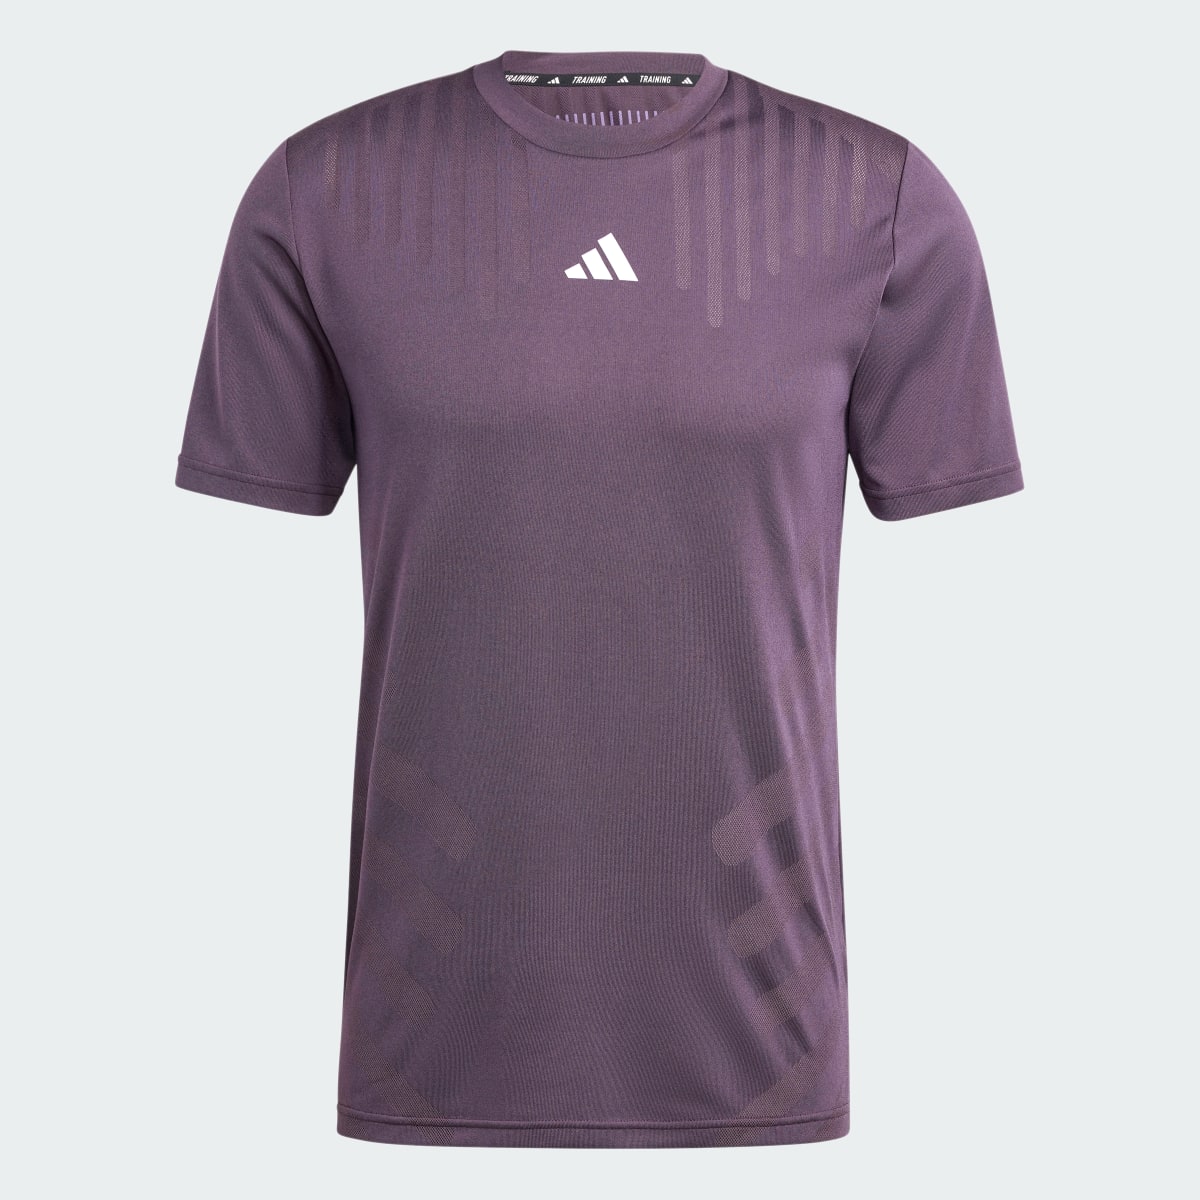 Adidas T-shirt entraînement HIIT Airchill. 5